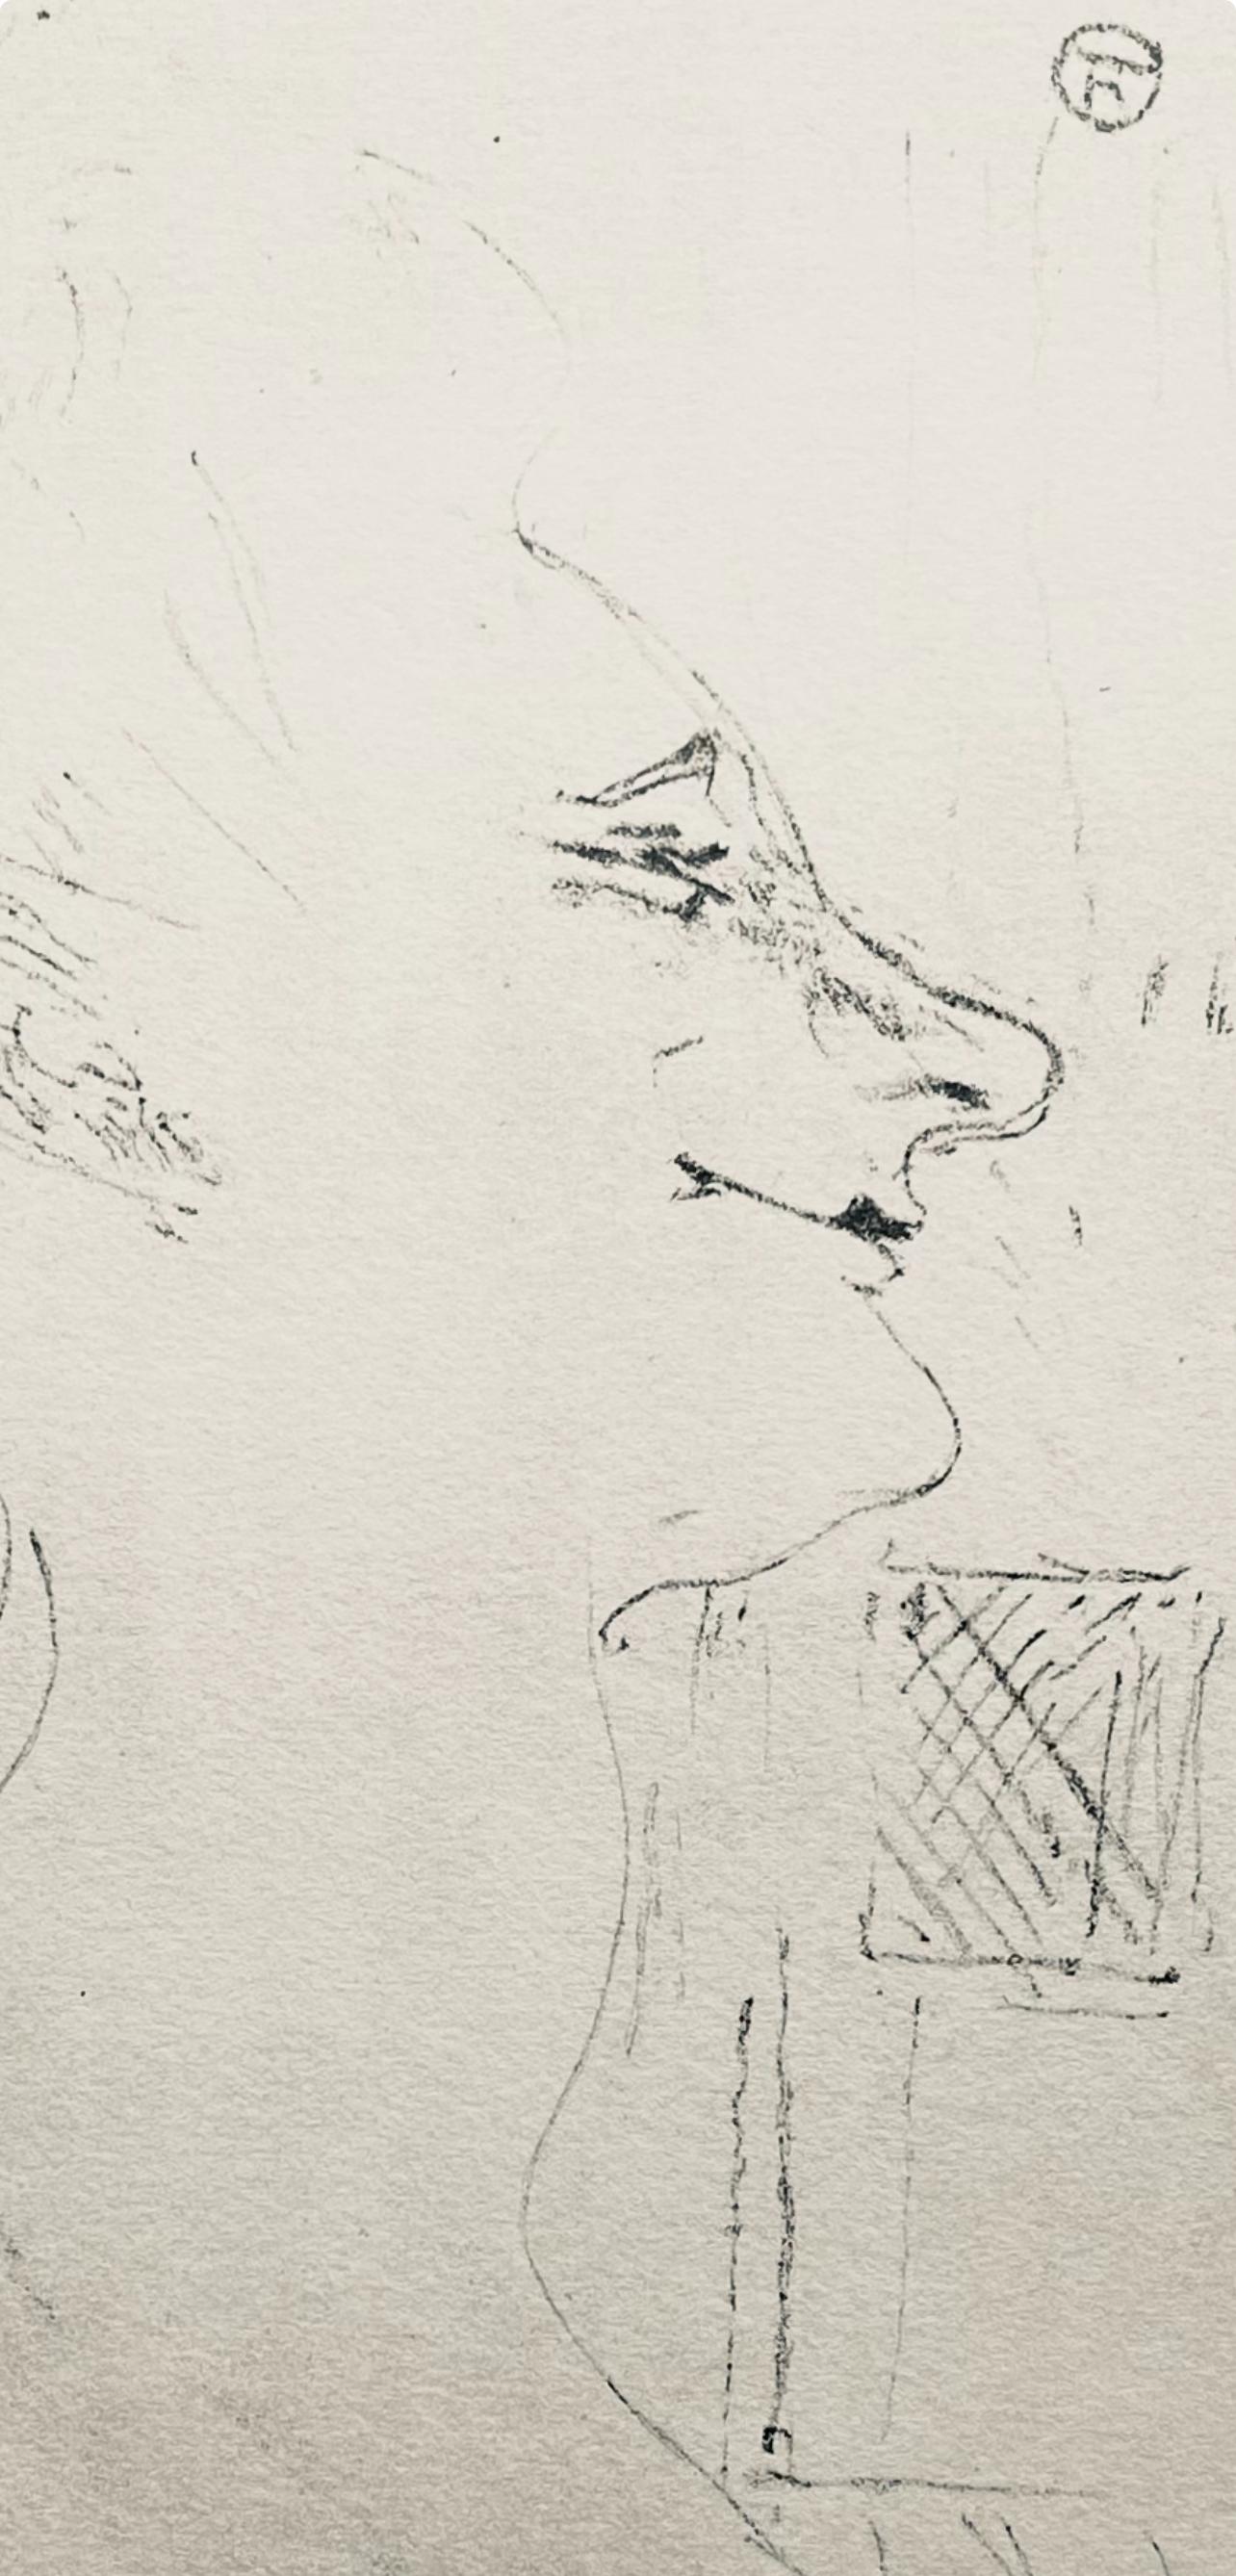 Toulouse-Lautrec, Composición, Yvette Guilbert vista por Toulouse-Lautrec (después) - Print Posimpresionista de Henri de Toulouse-Lautrec